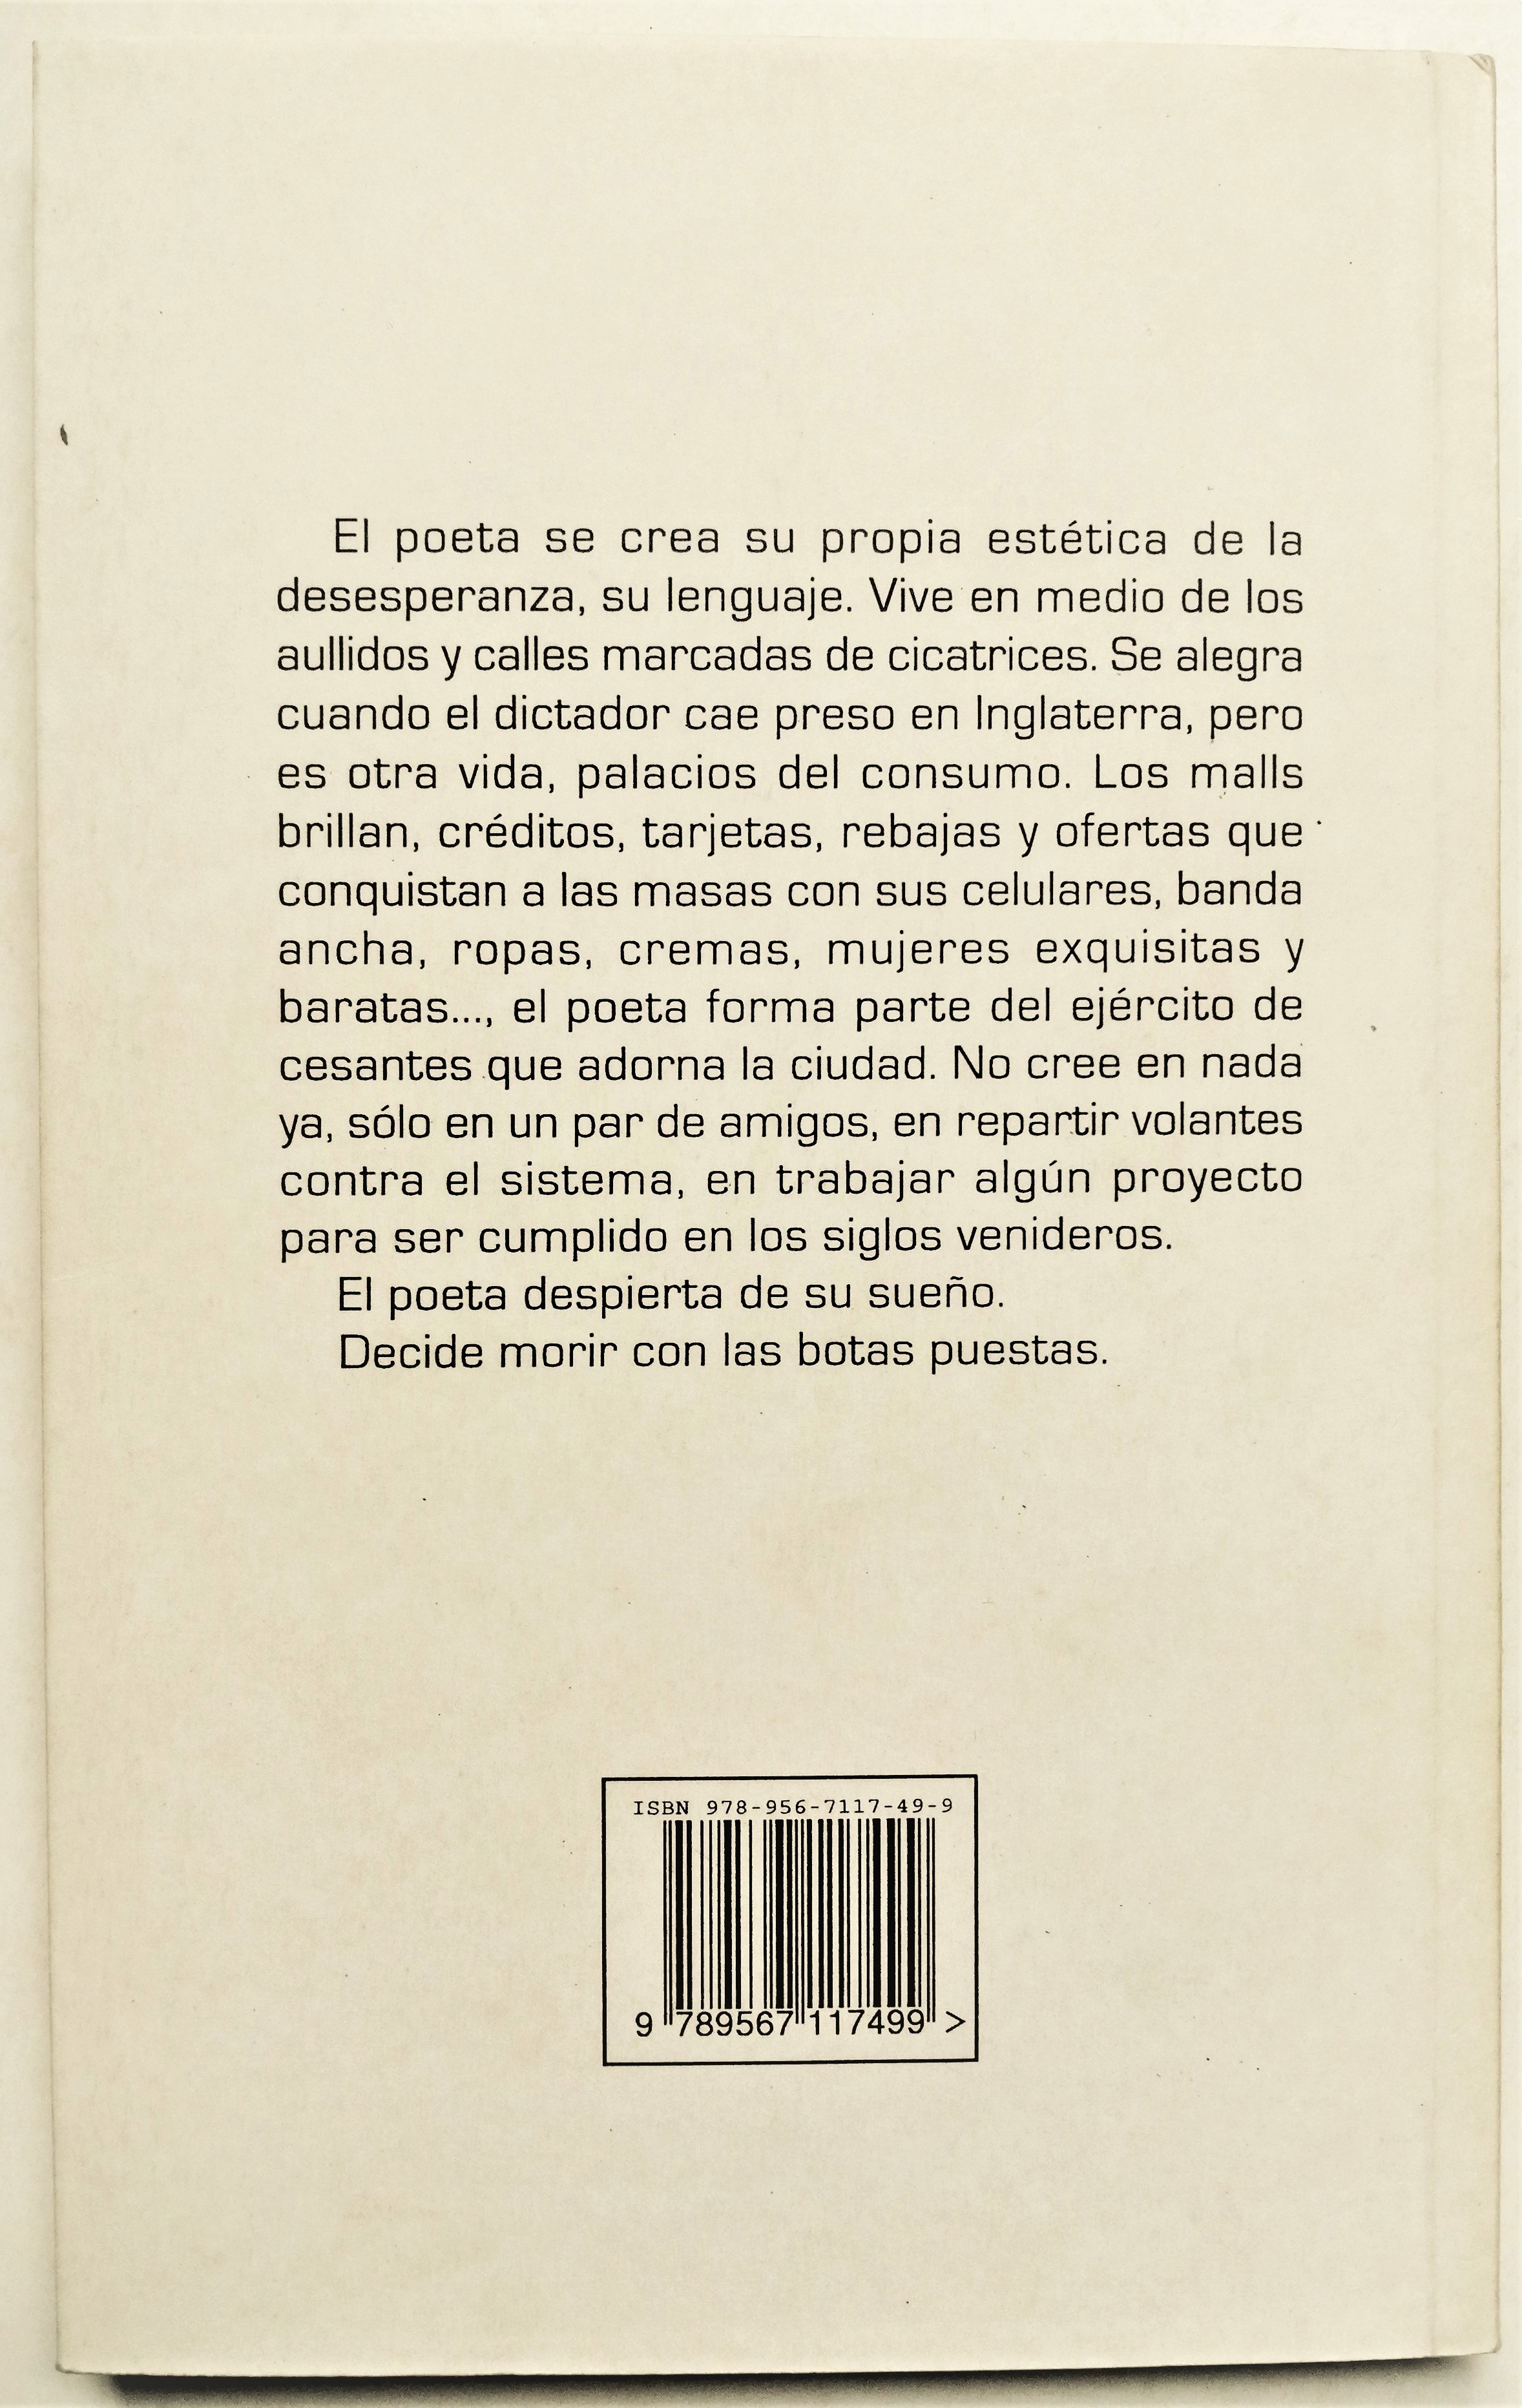 José Ángel Cuevas - Autobiografía de un extremista